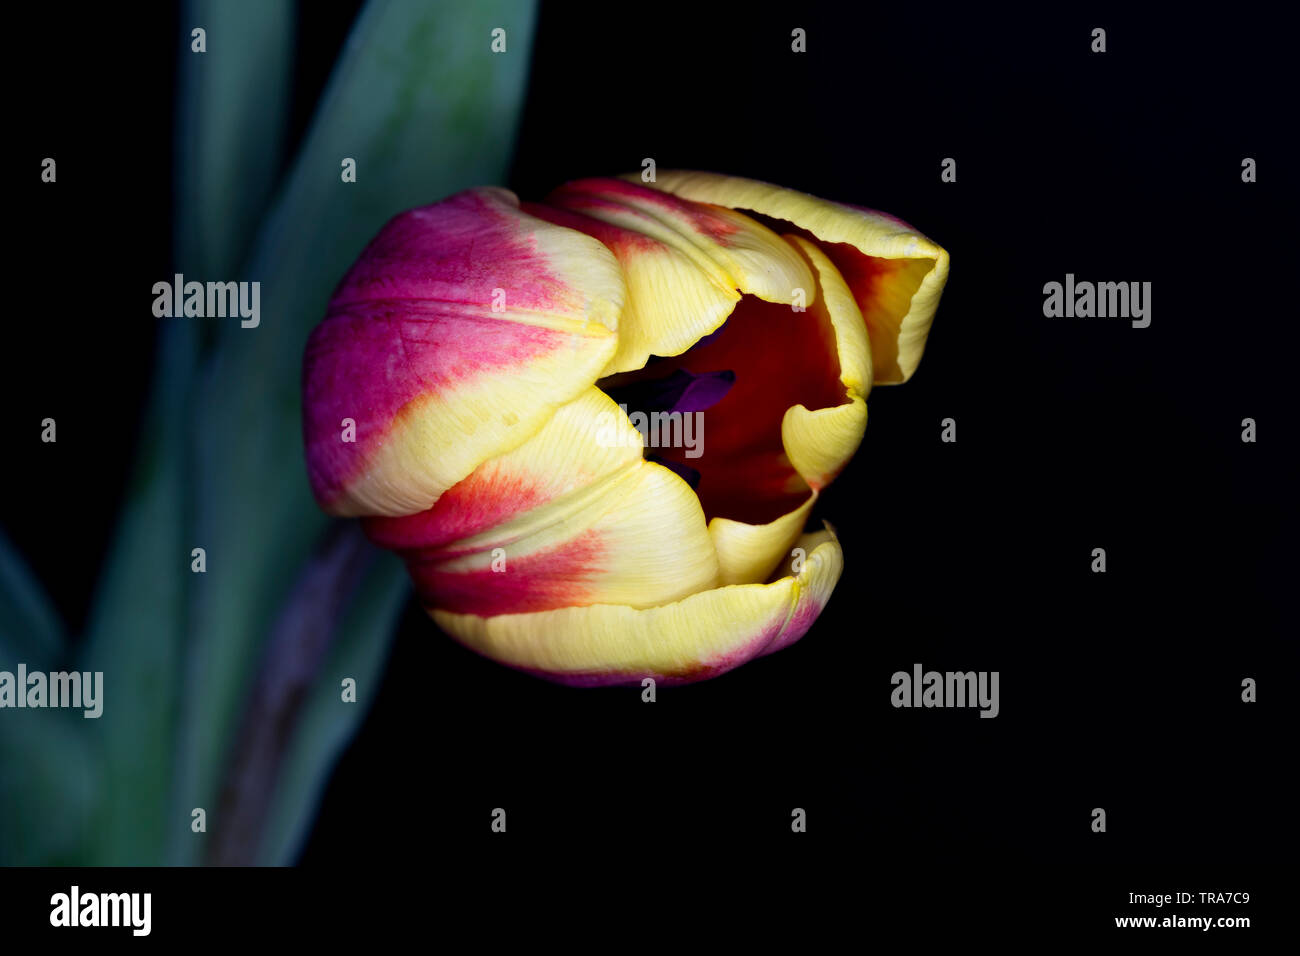 Tulpe Blume Kopf, Tulipa Gattung der Frühling blühende Mehrjährige krautige bulbiferous Geophyten, Makro mit einer geringen Tiefenschärfe Stockfoto